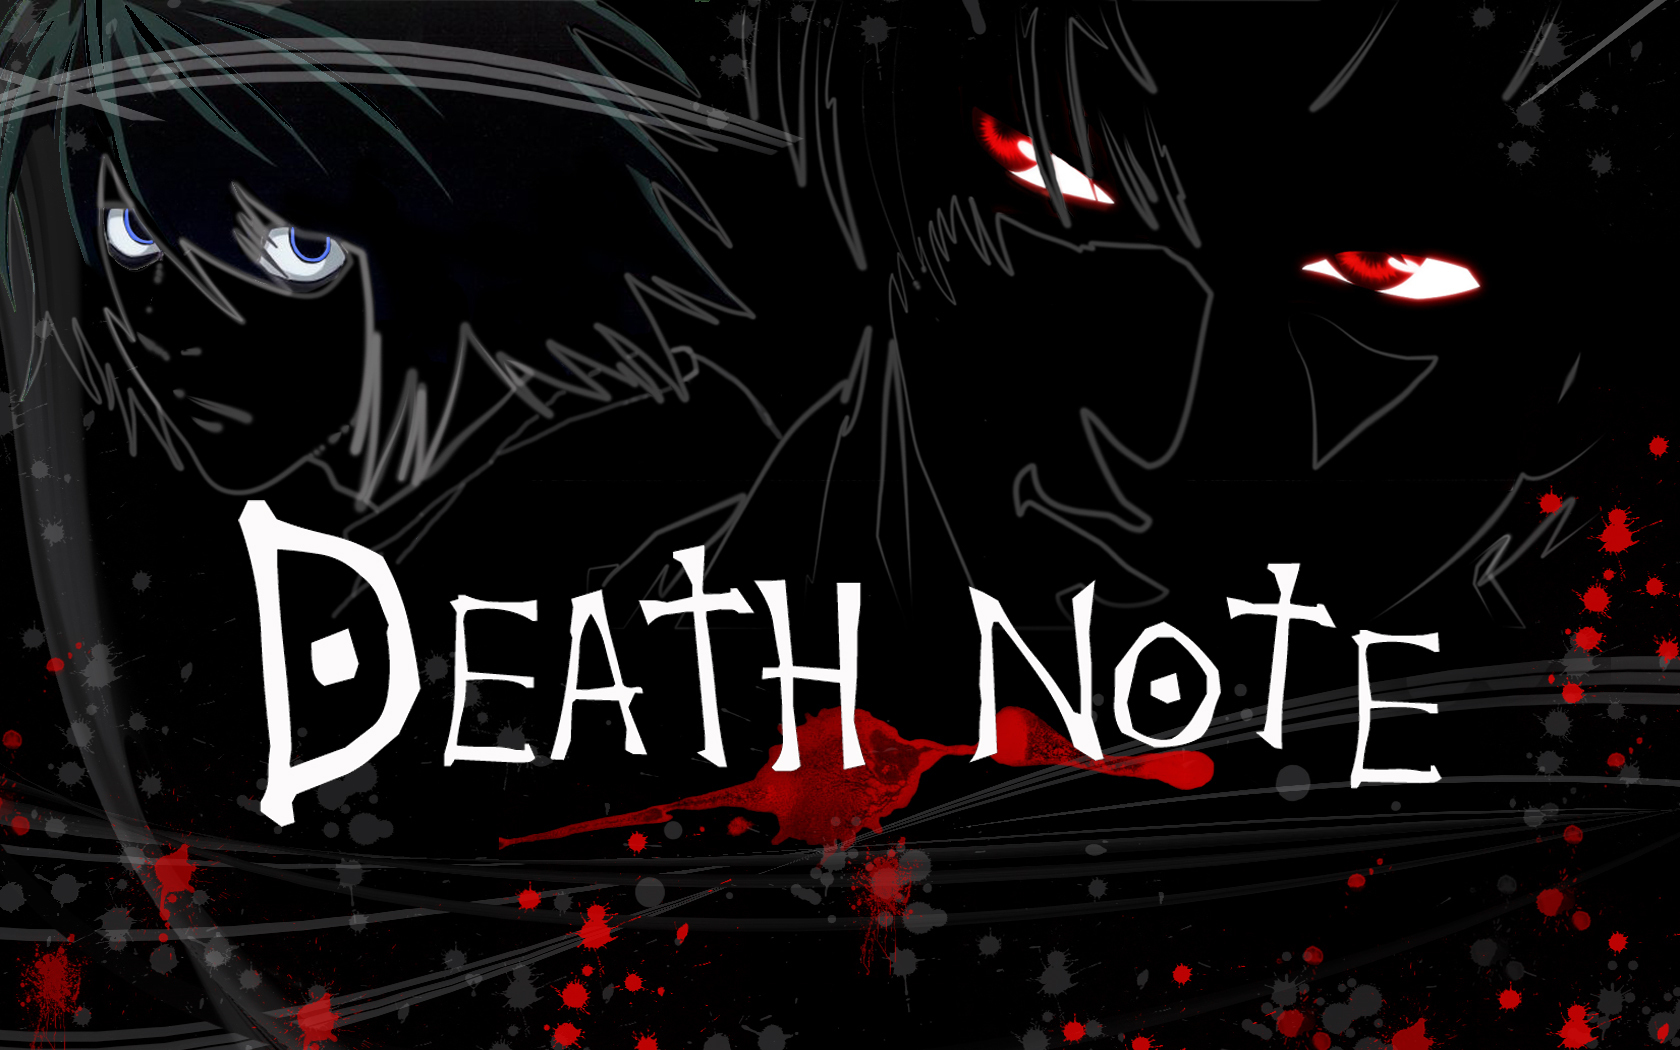 Netflix começa a produzir filme baseado no mangá 'Death Note